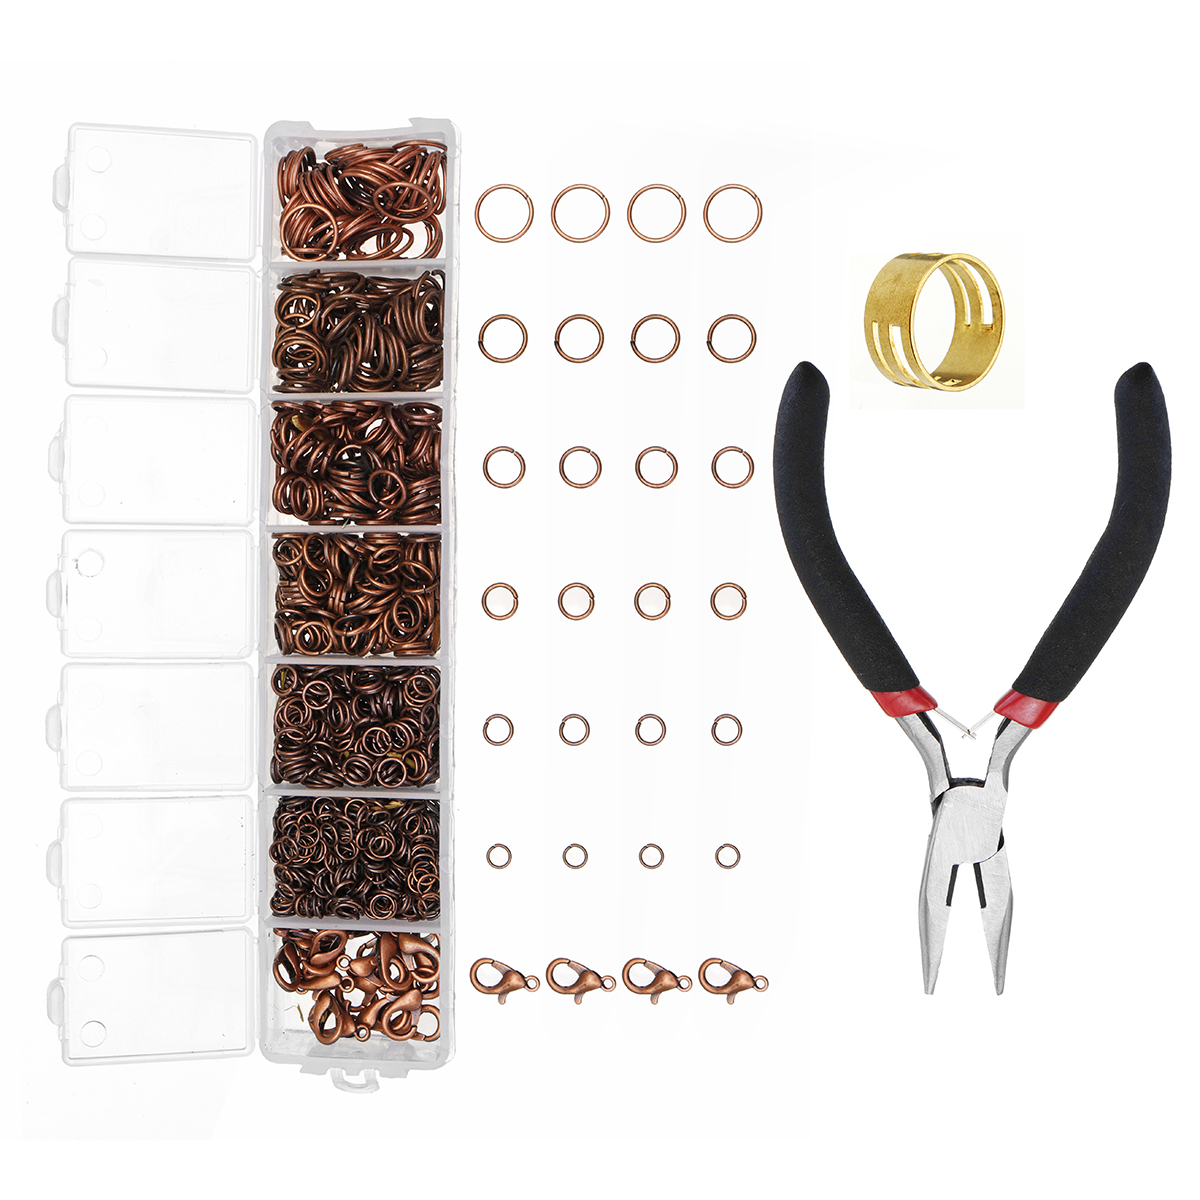 DIY-Jewelry-Making-Findings-Kit-Metal-Jump-Rings-Lobster-Clasp-Pliers-Tool-Set-1420893-3